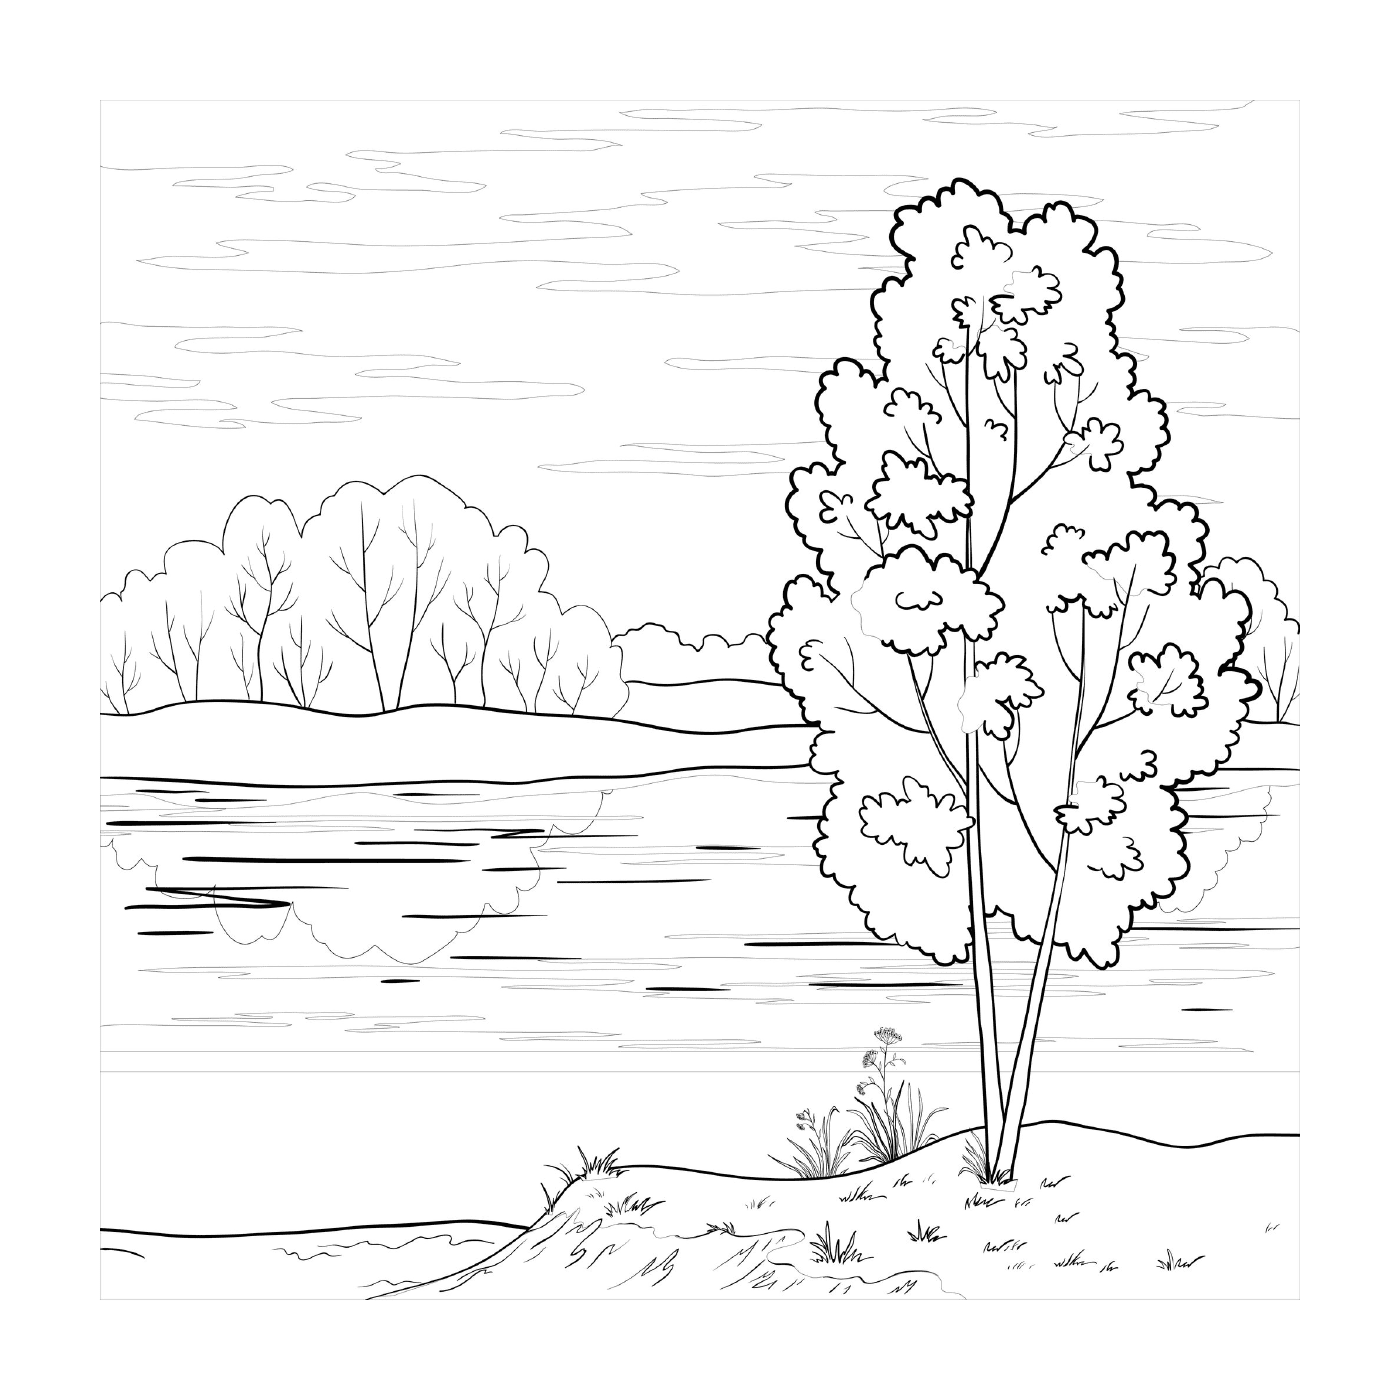  A tree by a lake 